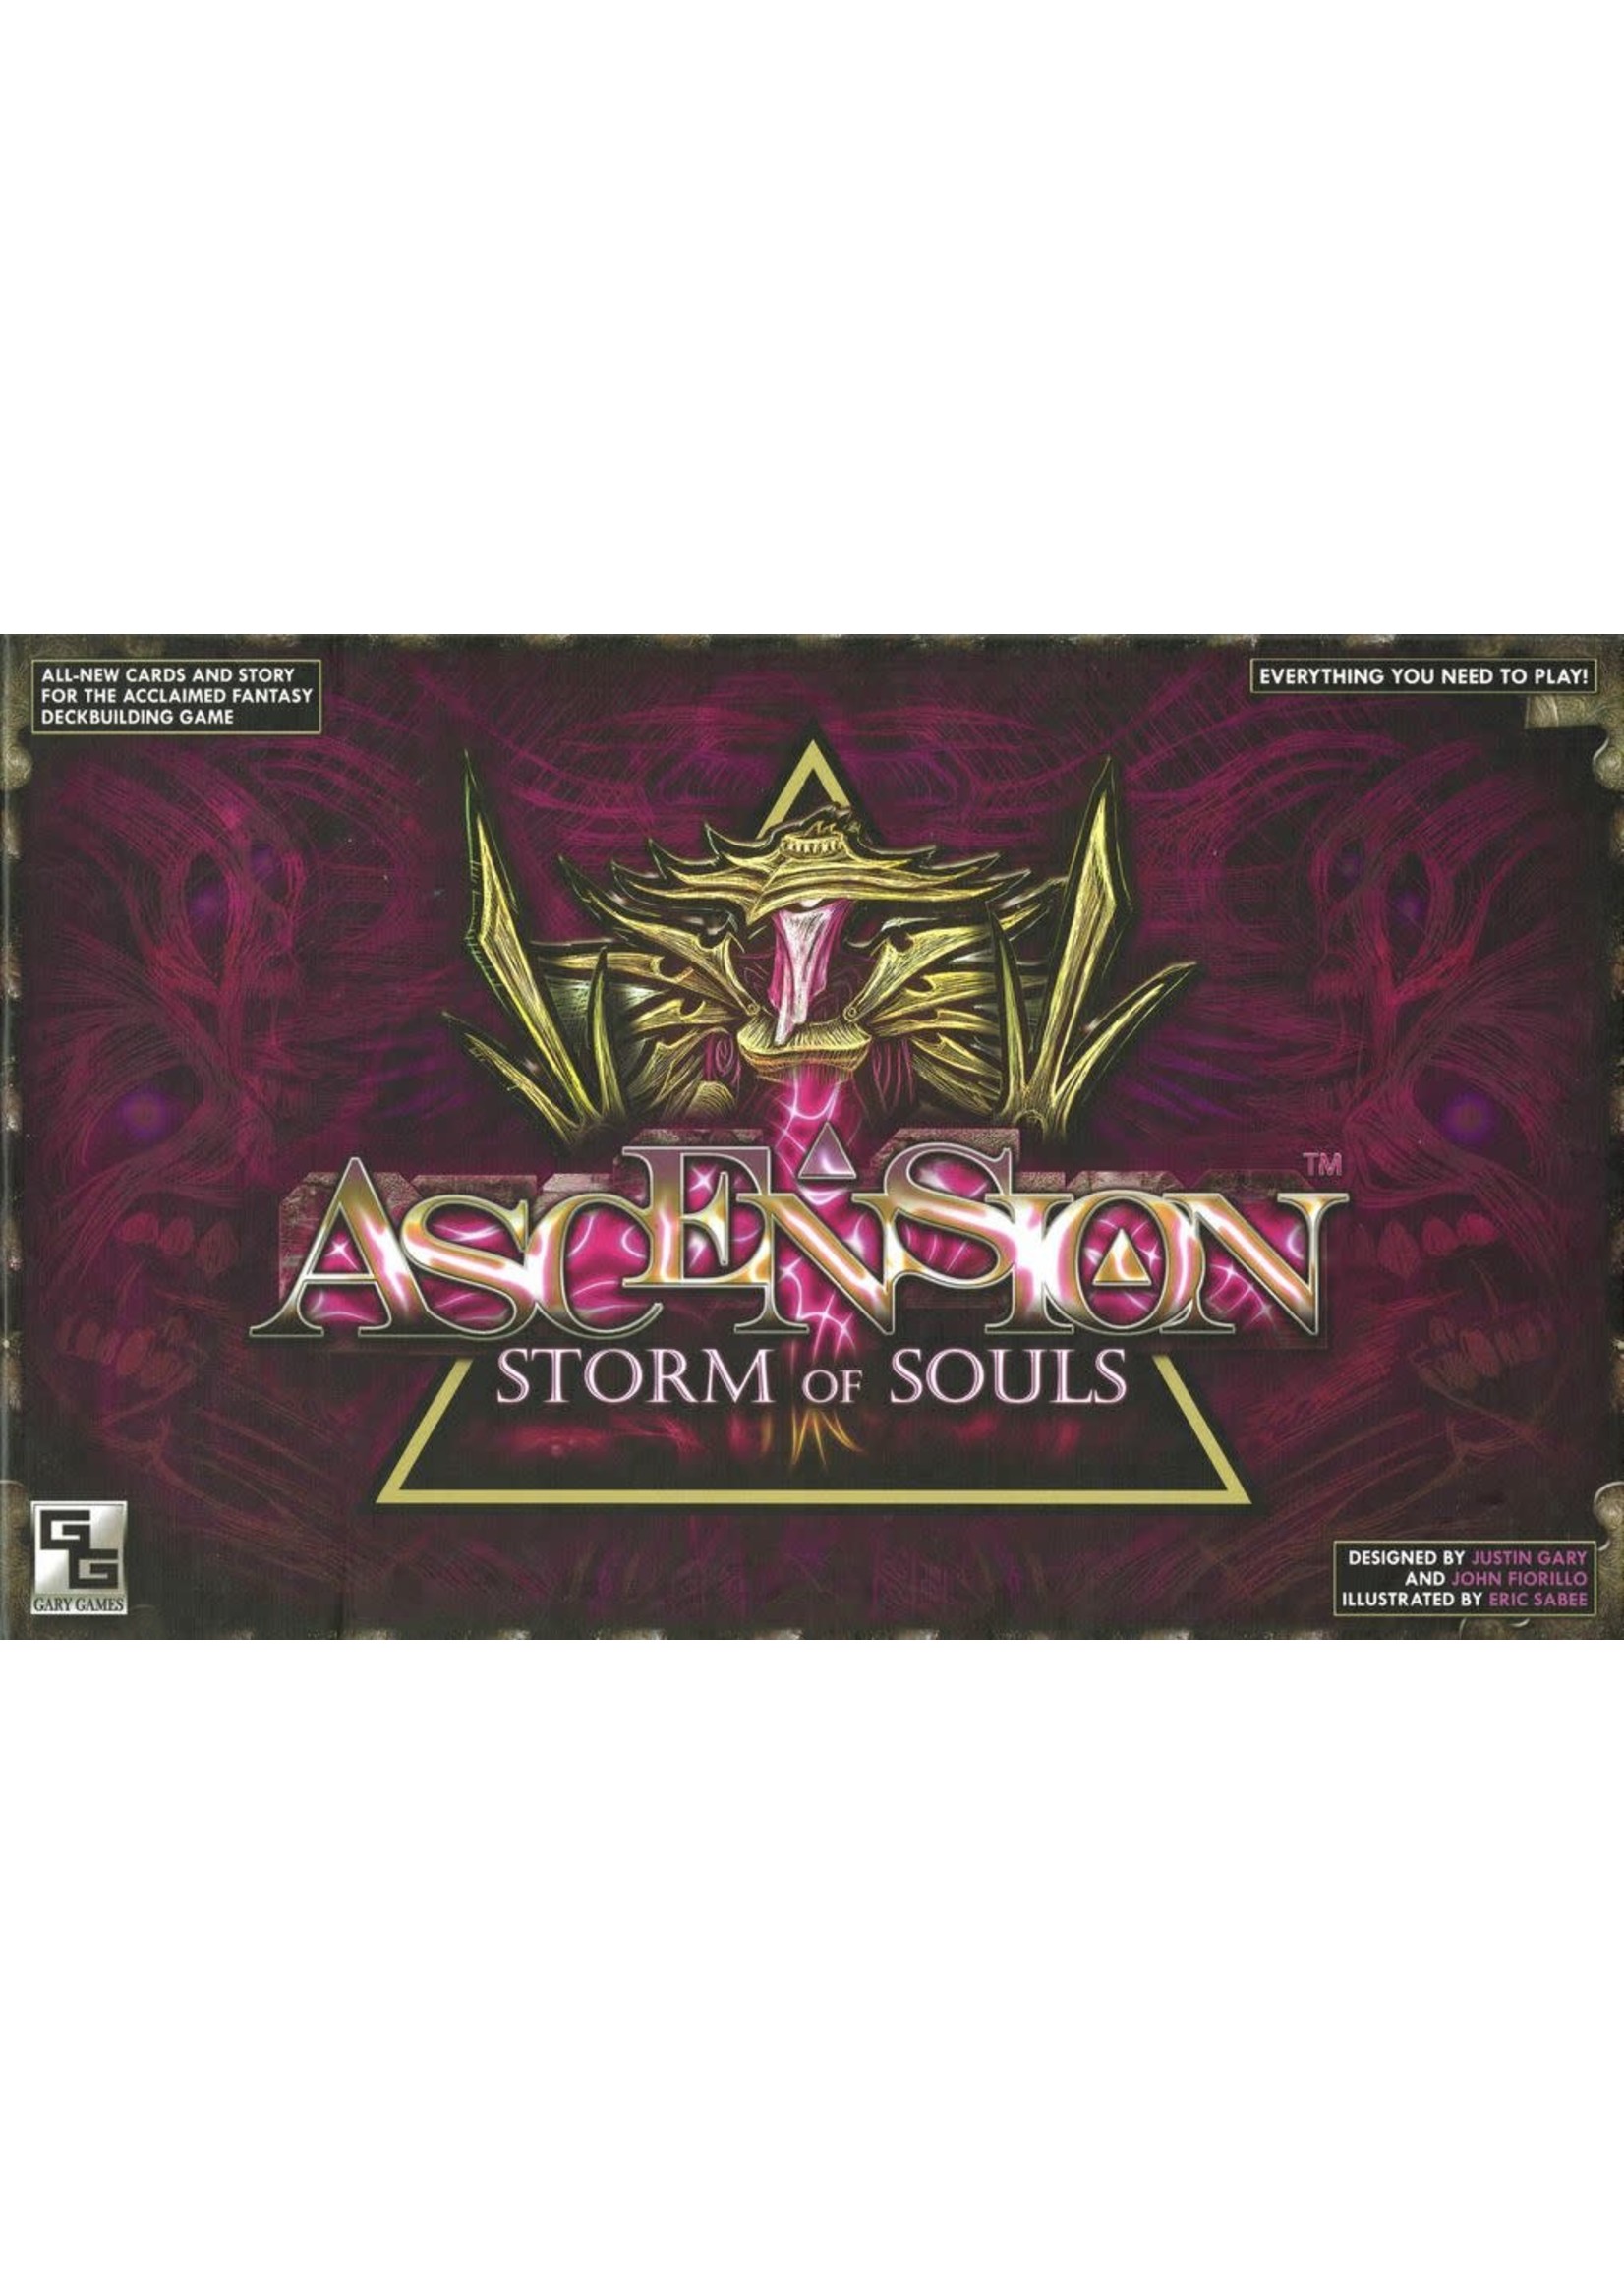 Rental RENTAL - Ascension Storm of Souls 2 Lb 15.9 oz